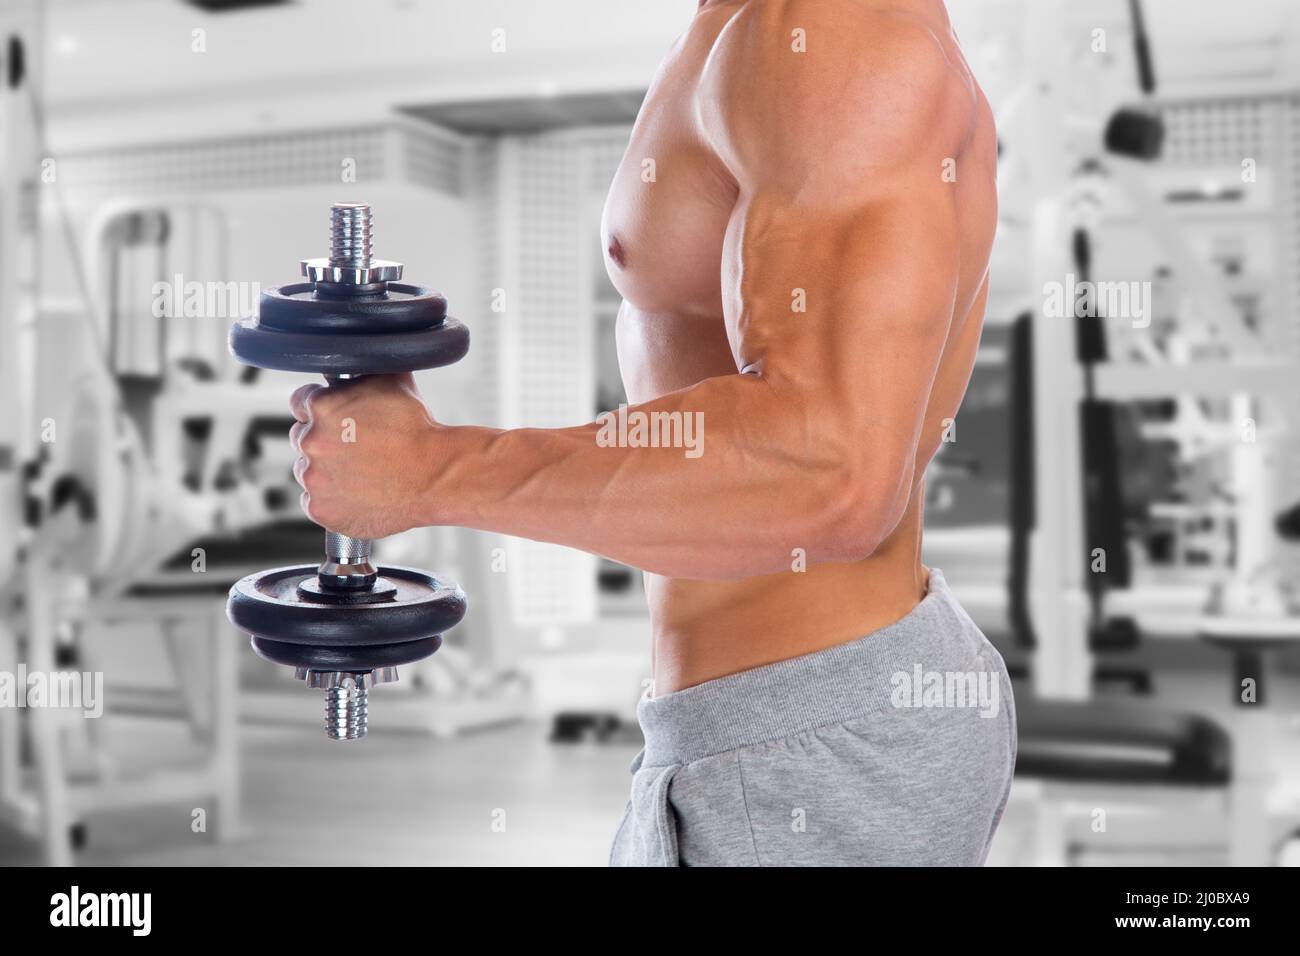 Forza potere forte muscolare bicipite braccio palestra bodybuilder bodybuilding muscoli dumbbell Foto Stock